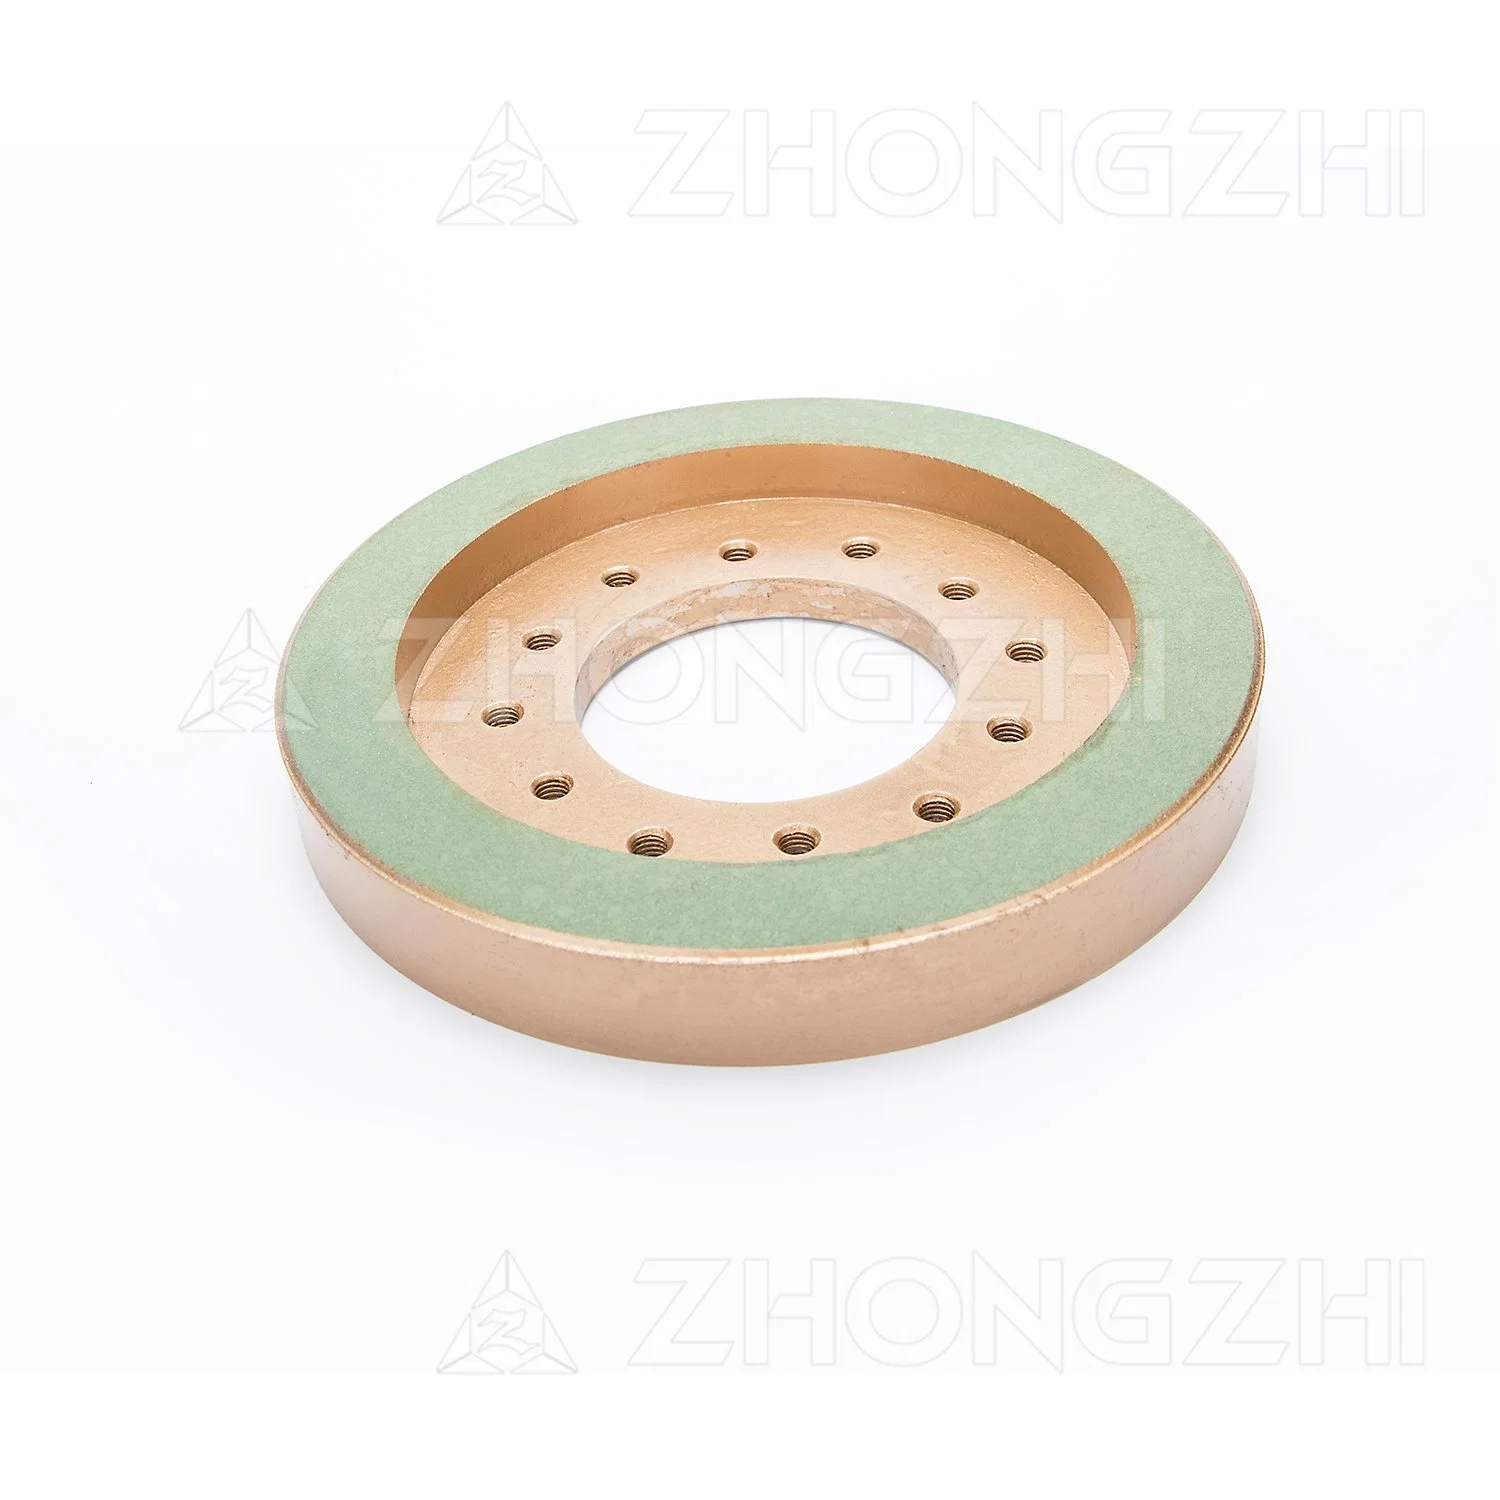 Pulido de diamantes Resin-Bond 200mm de rueda para azulejos de cerámica